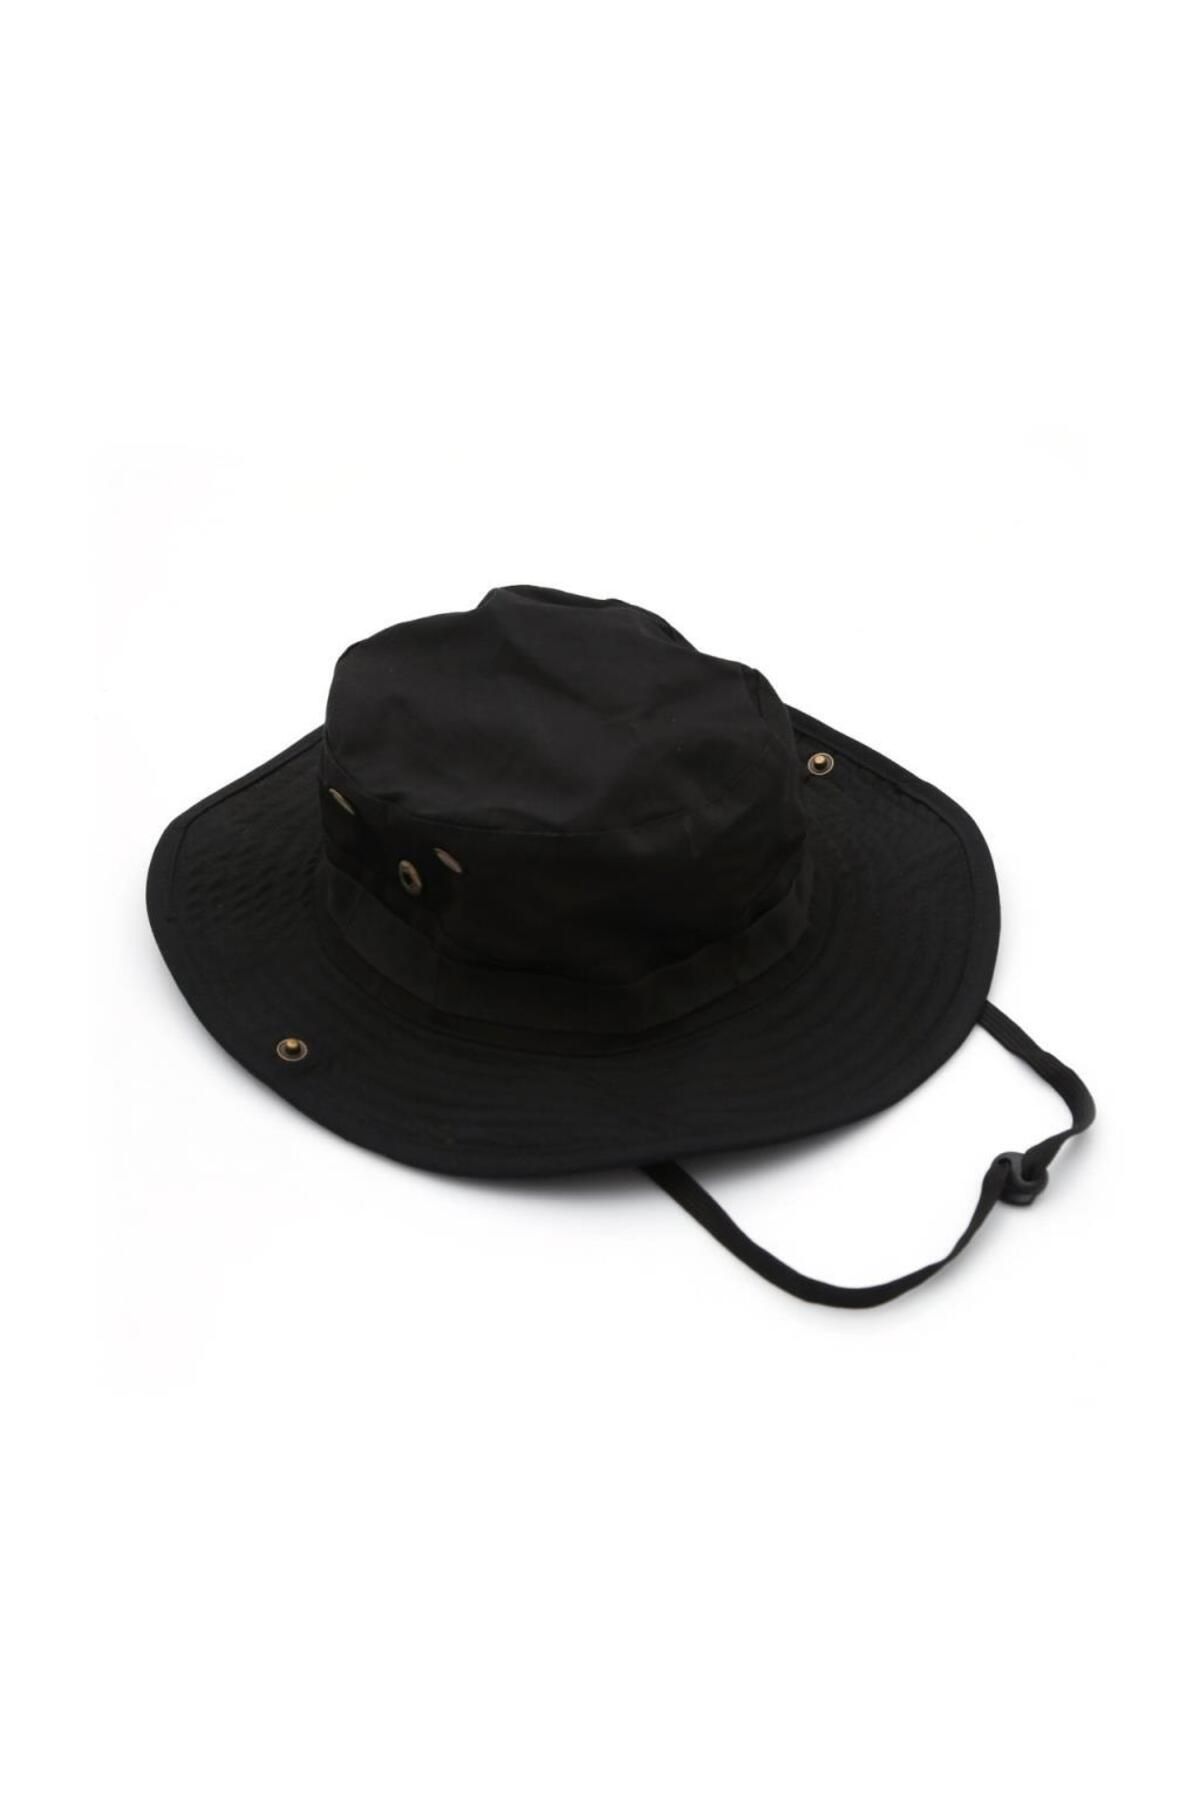 SİNGLE SWORD - Şapka - Katlanabilir Safari Fötr Şapkası